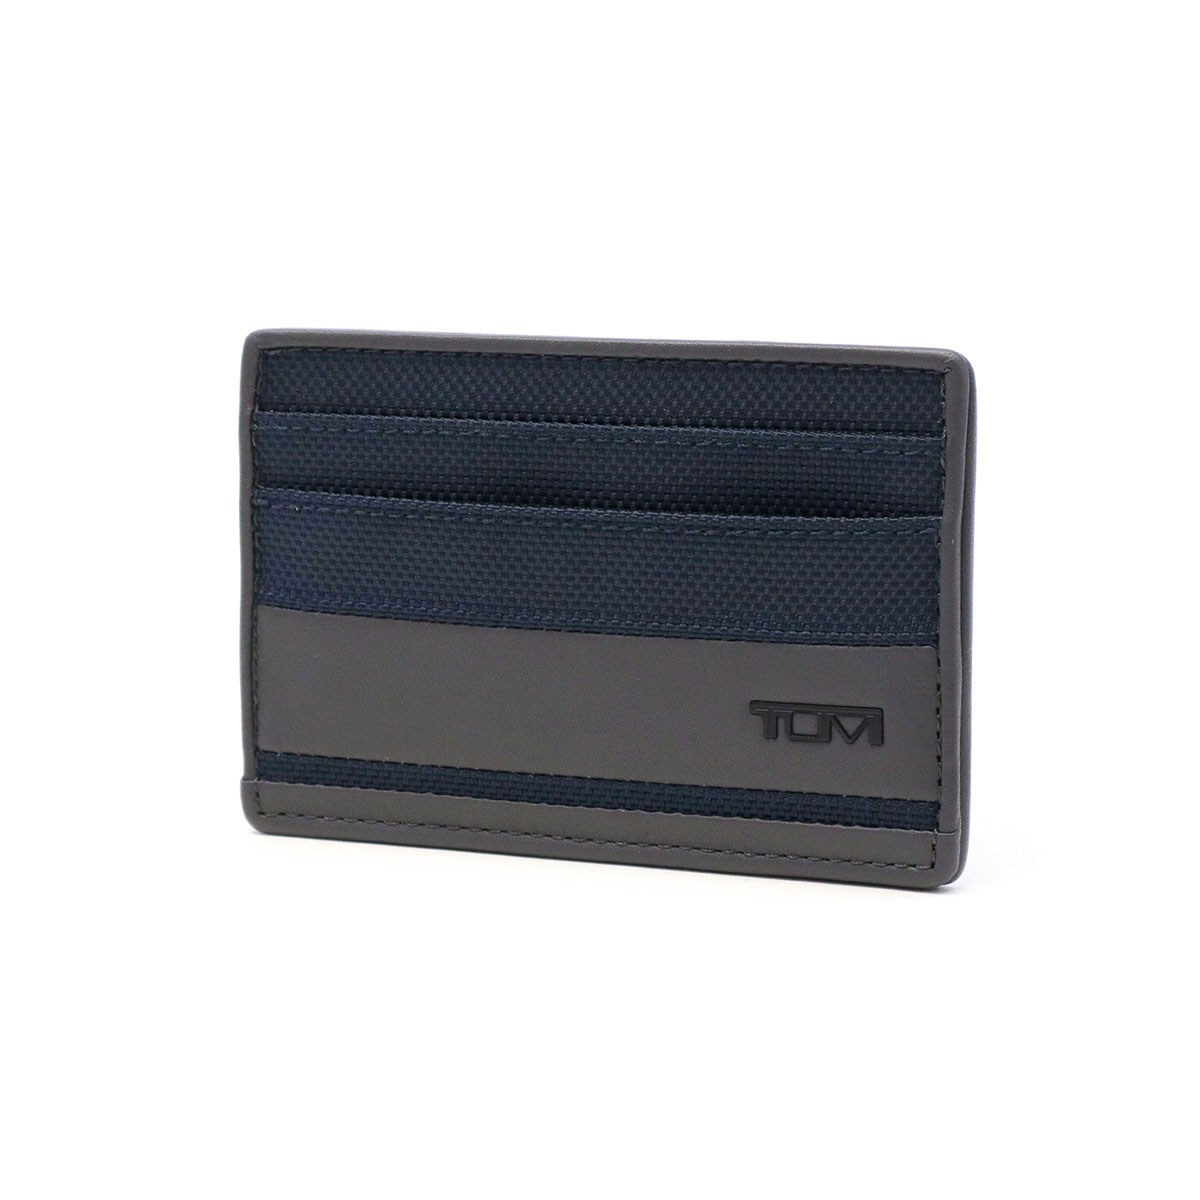 最大41%★5/29限定 正規品2年保証 トゥミ カードケース TUMI ALPHA SLG Slim Card Case スリム・カード・ケース  パスケース メンズ ビジネス 01192259